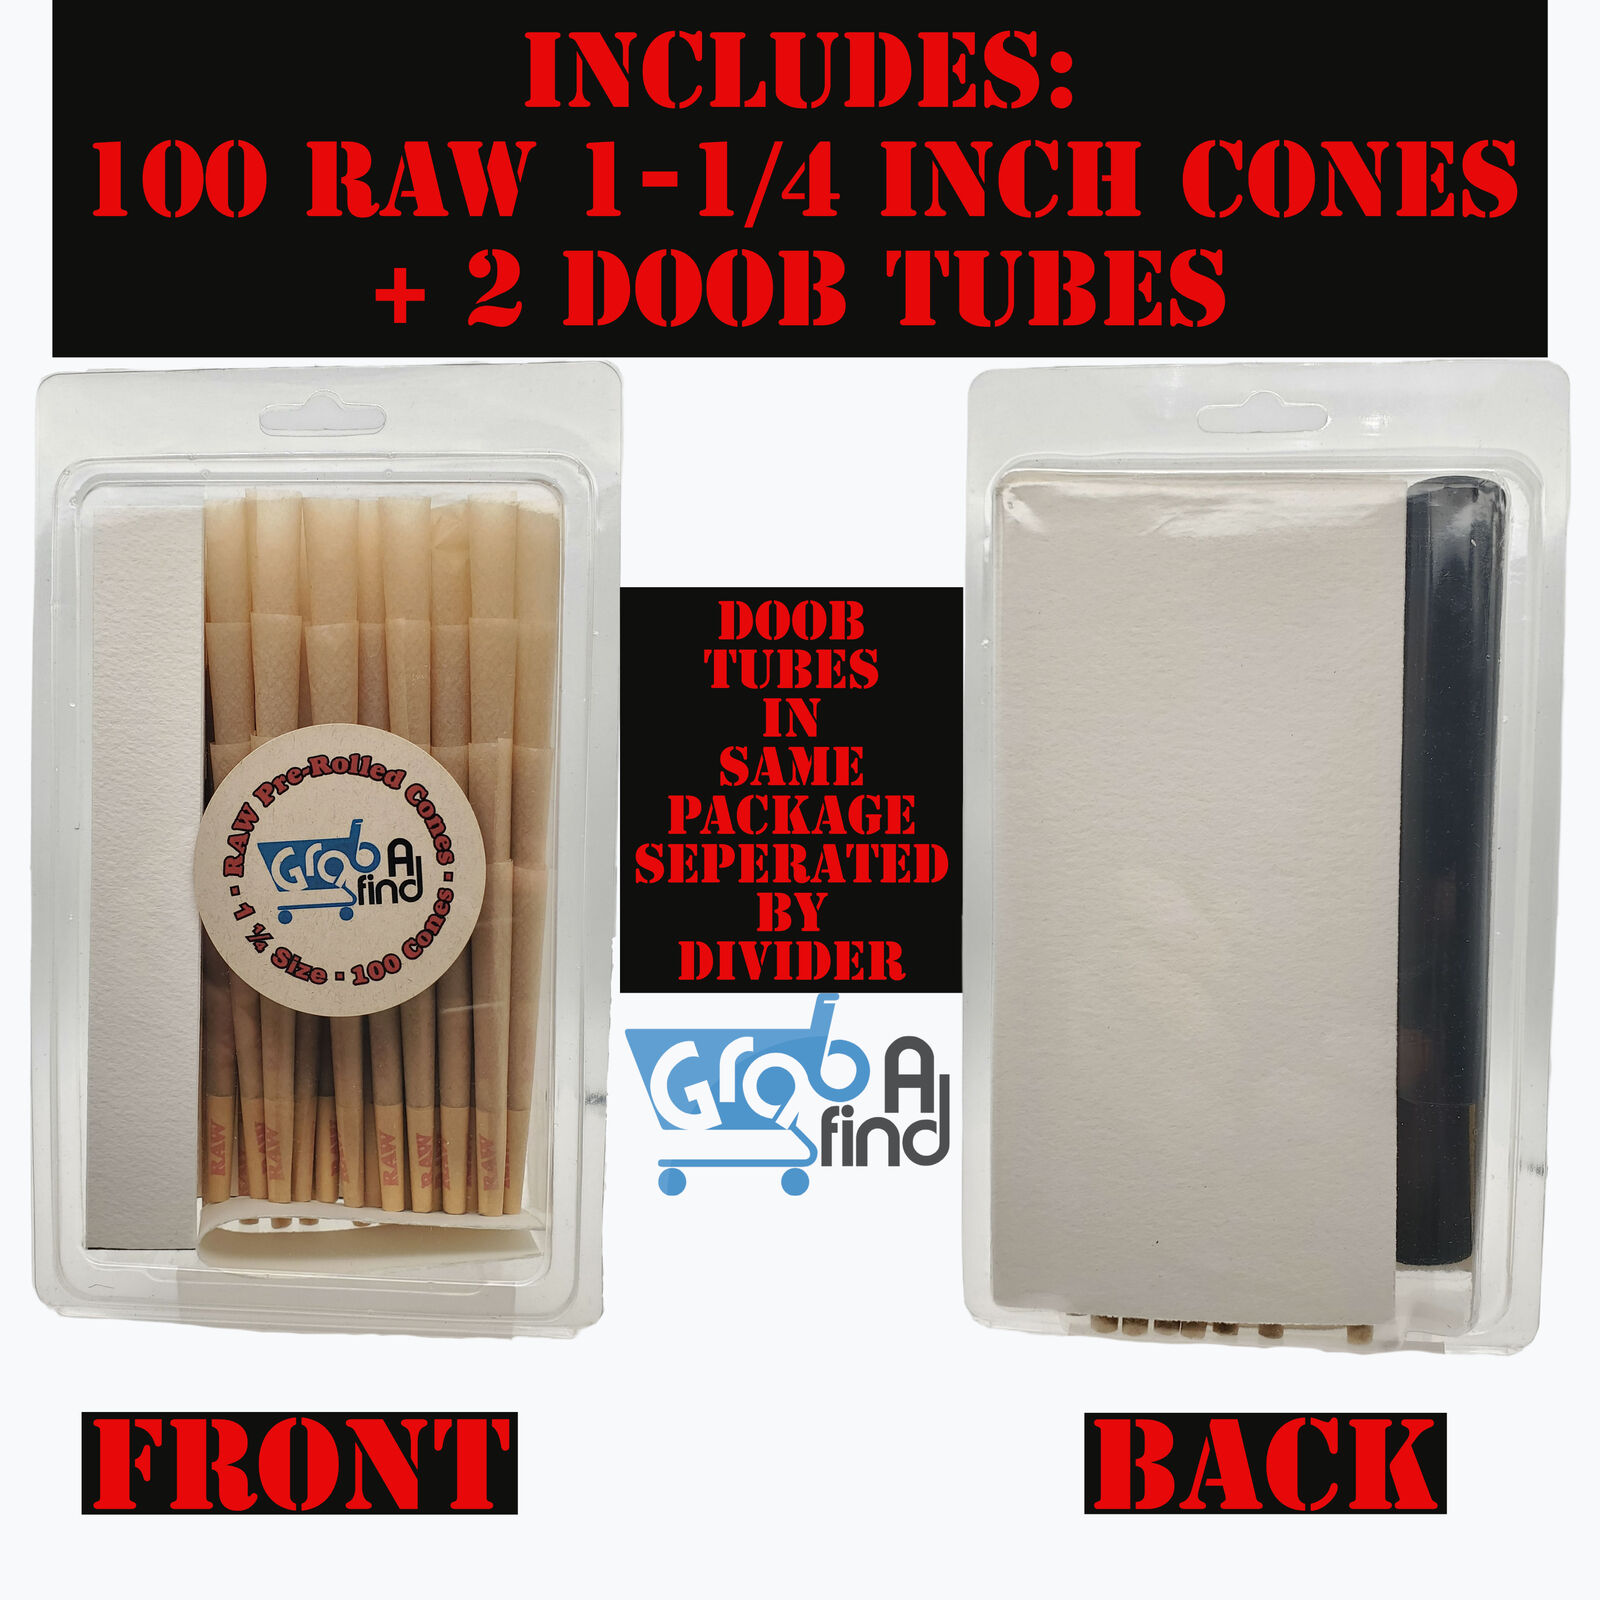 Raw Classic Cones 1-1/4 inch - 100 Pack + 2 doob tubes - Authentic Raw Cones -